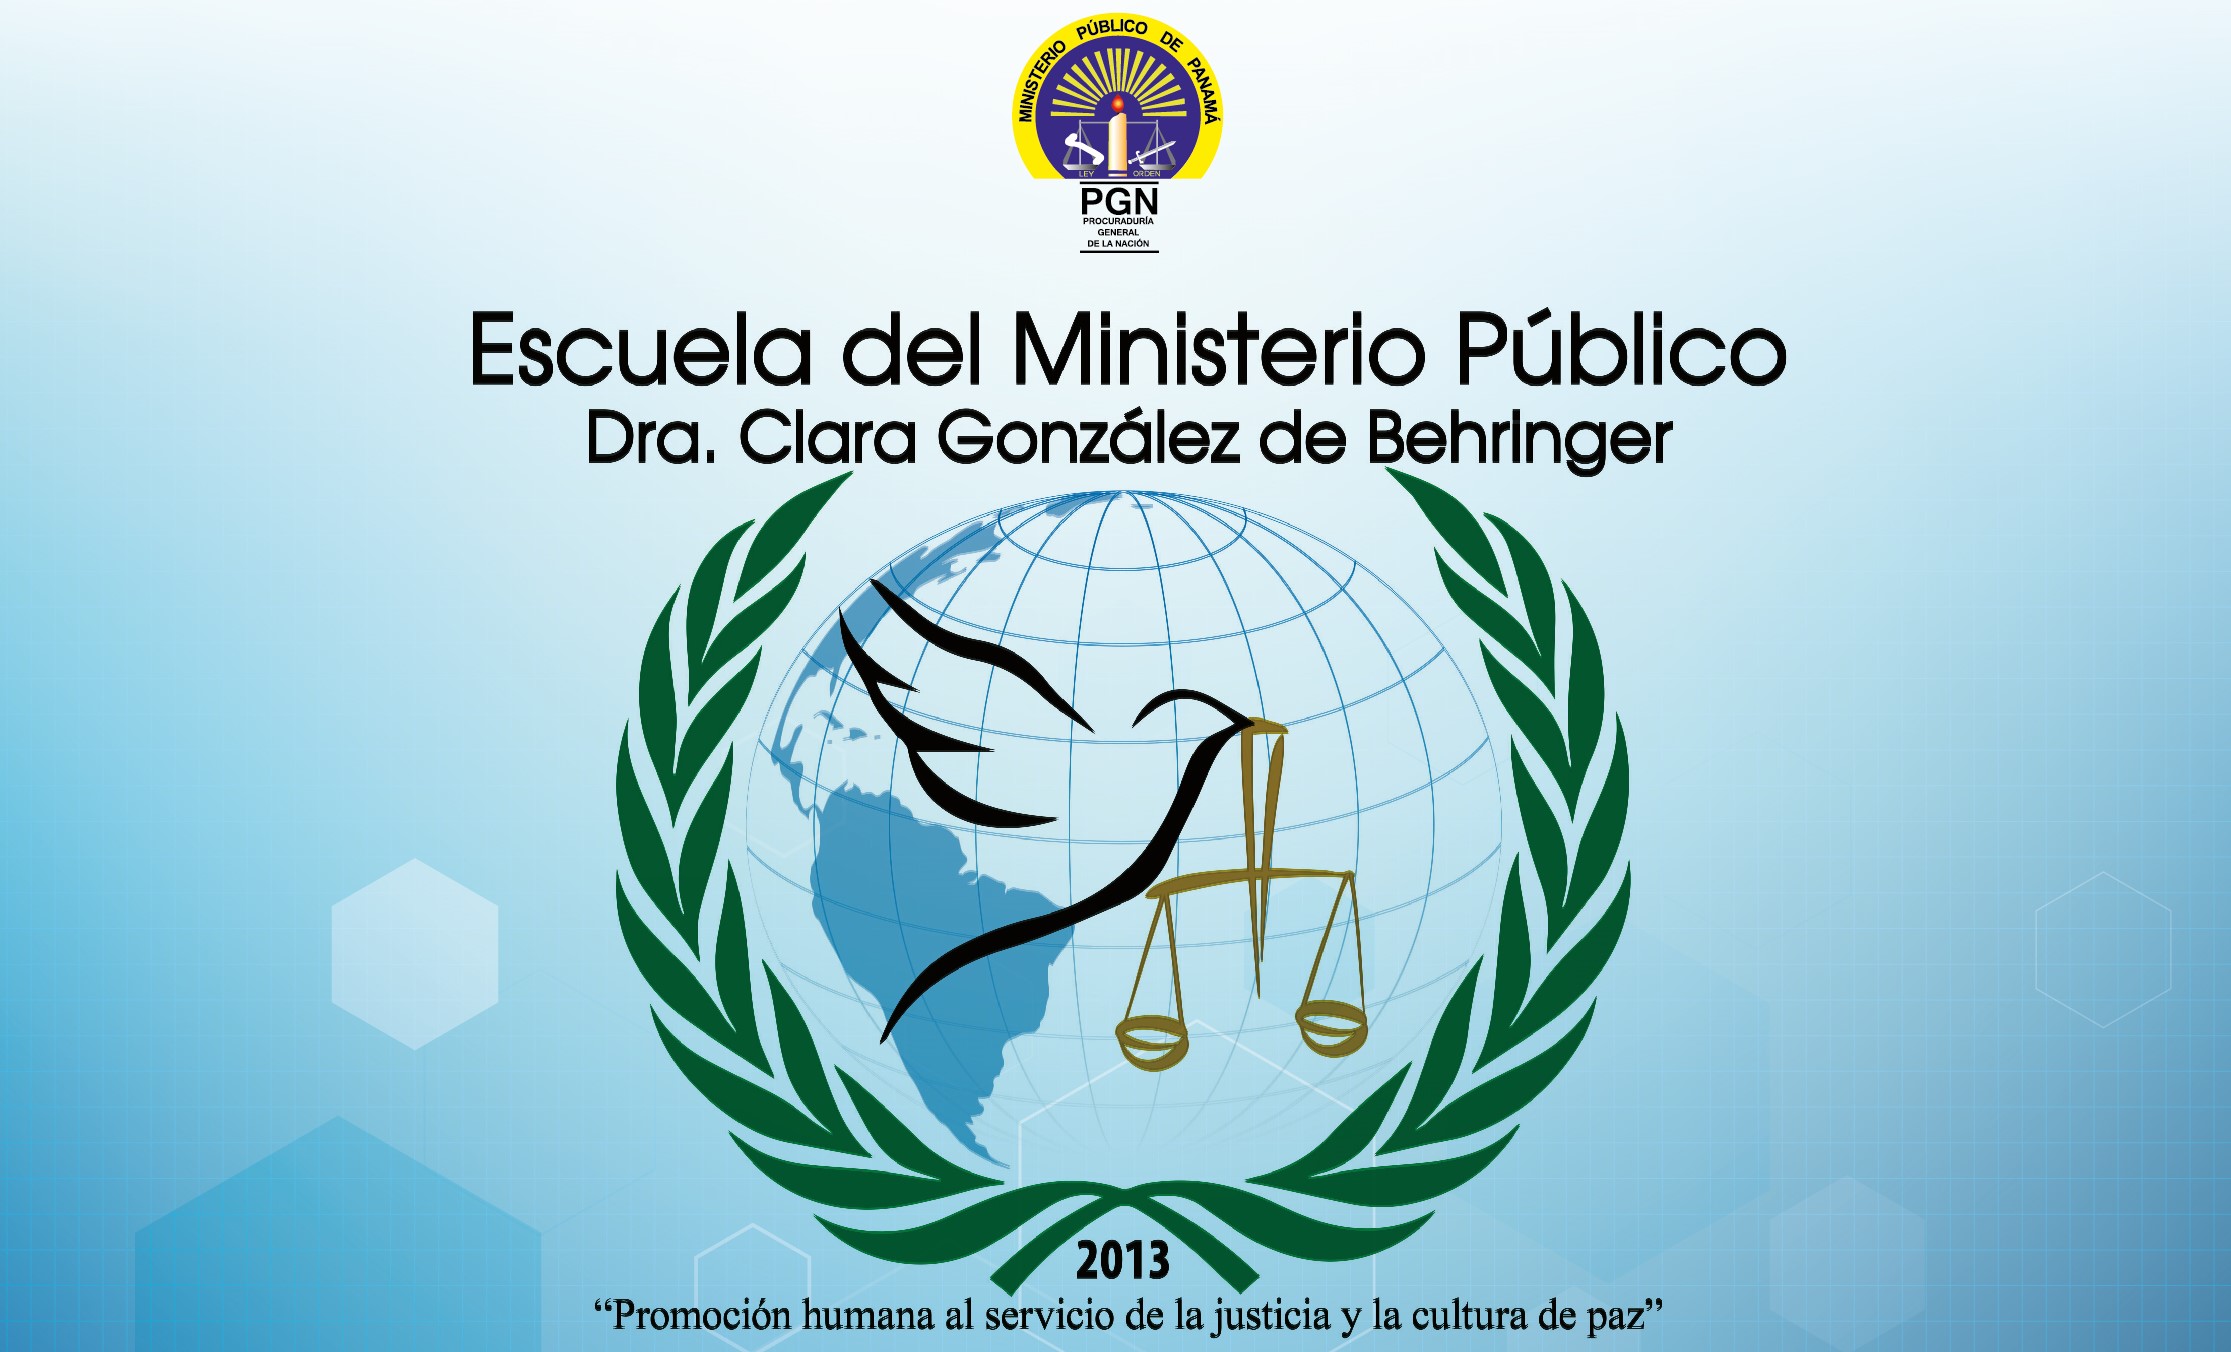 Celebran el Octavo Aniversario de la Escuela del Ministerio Público Dra. Clara González de Behringer